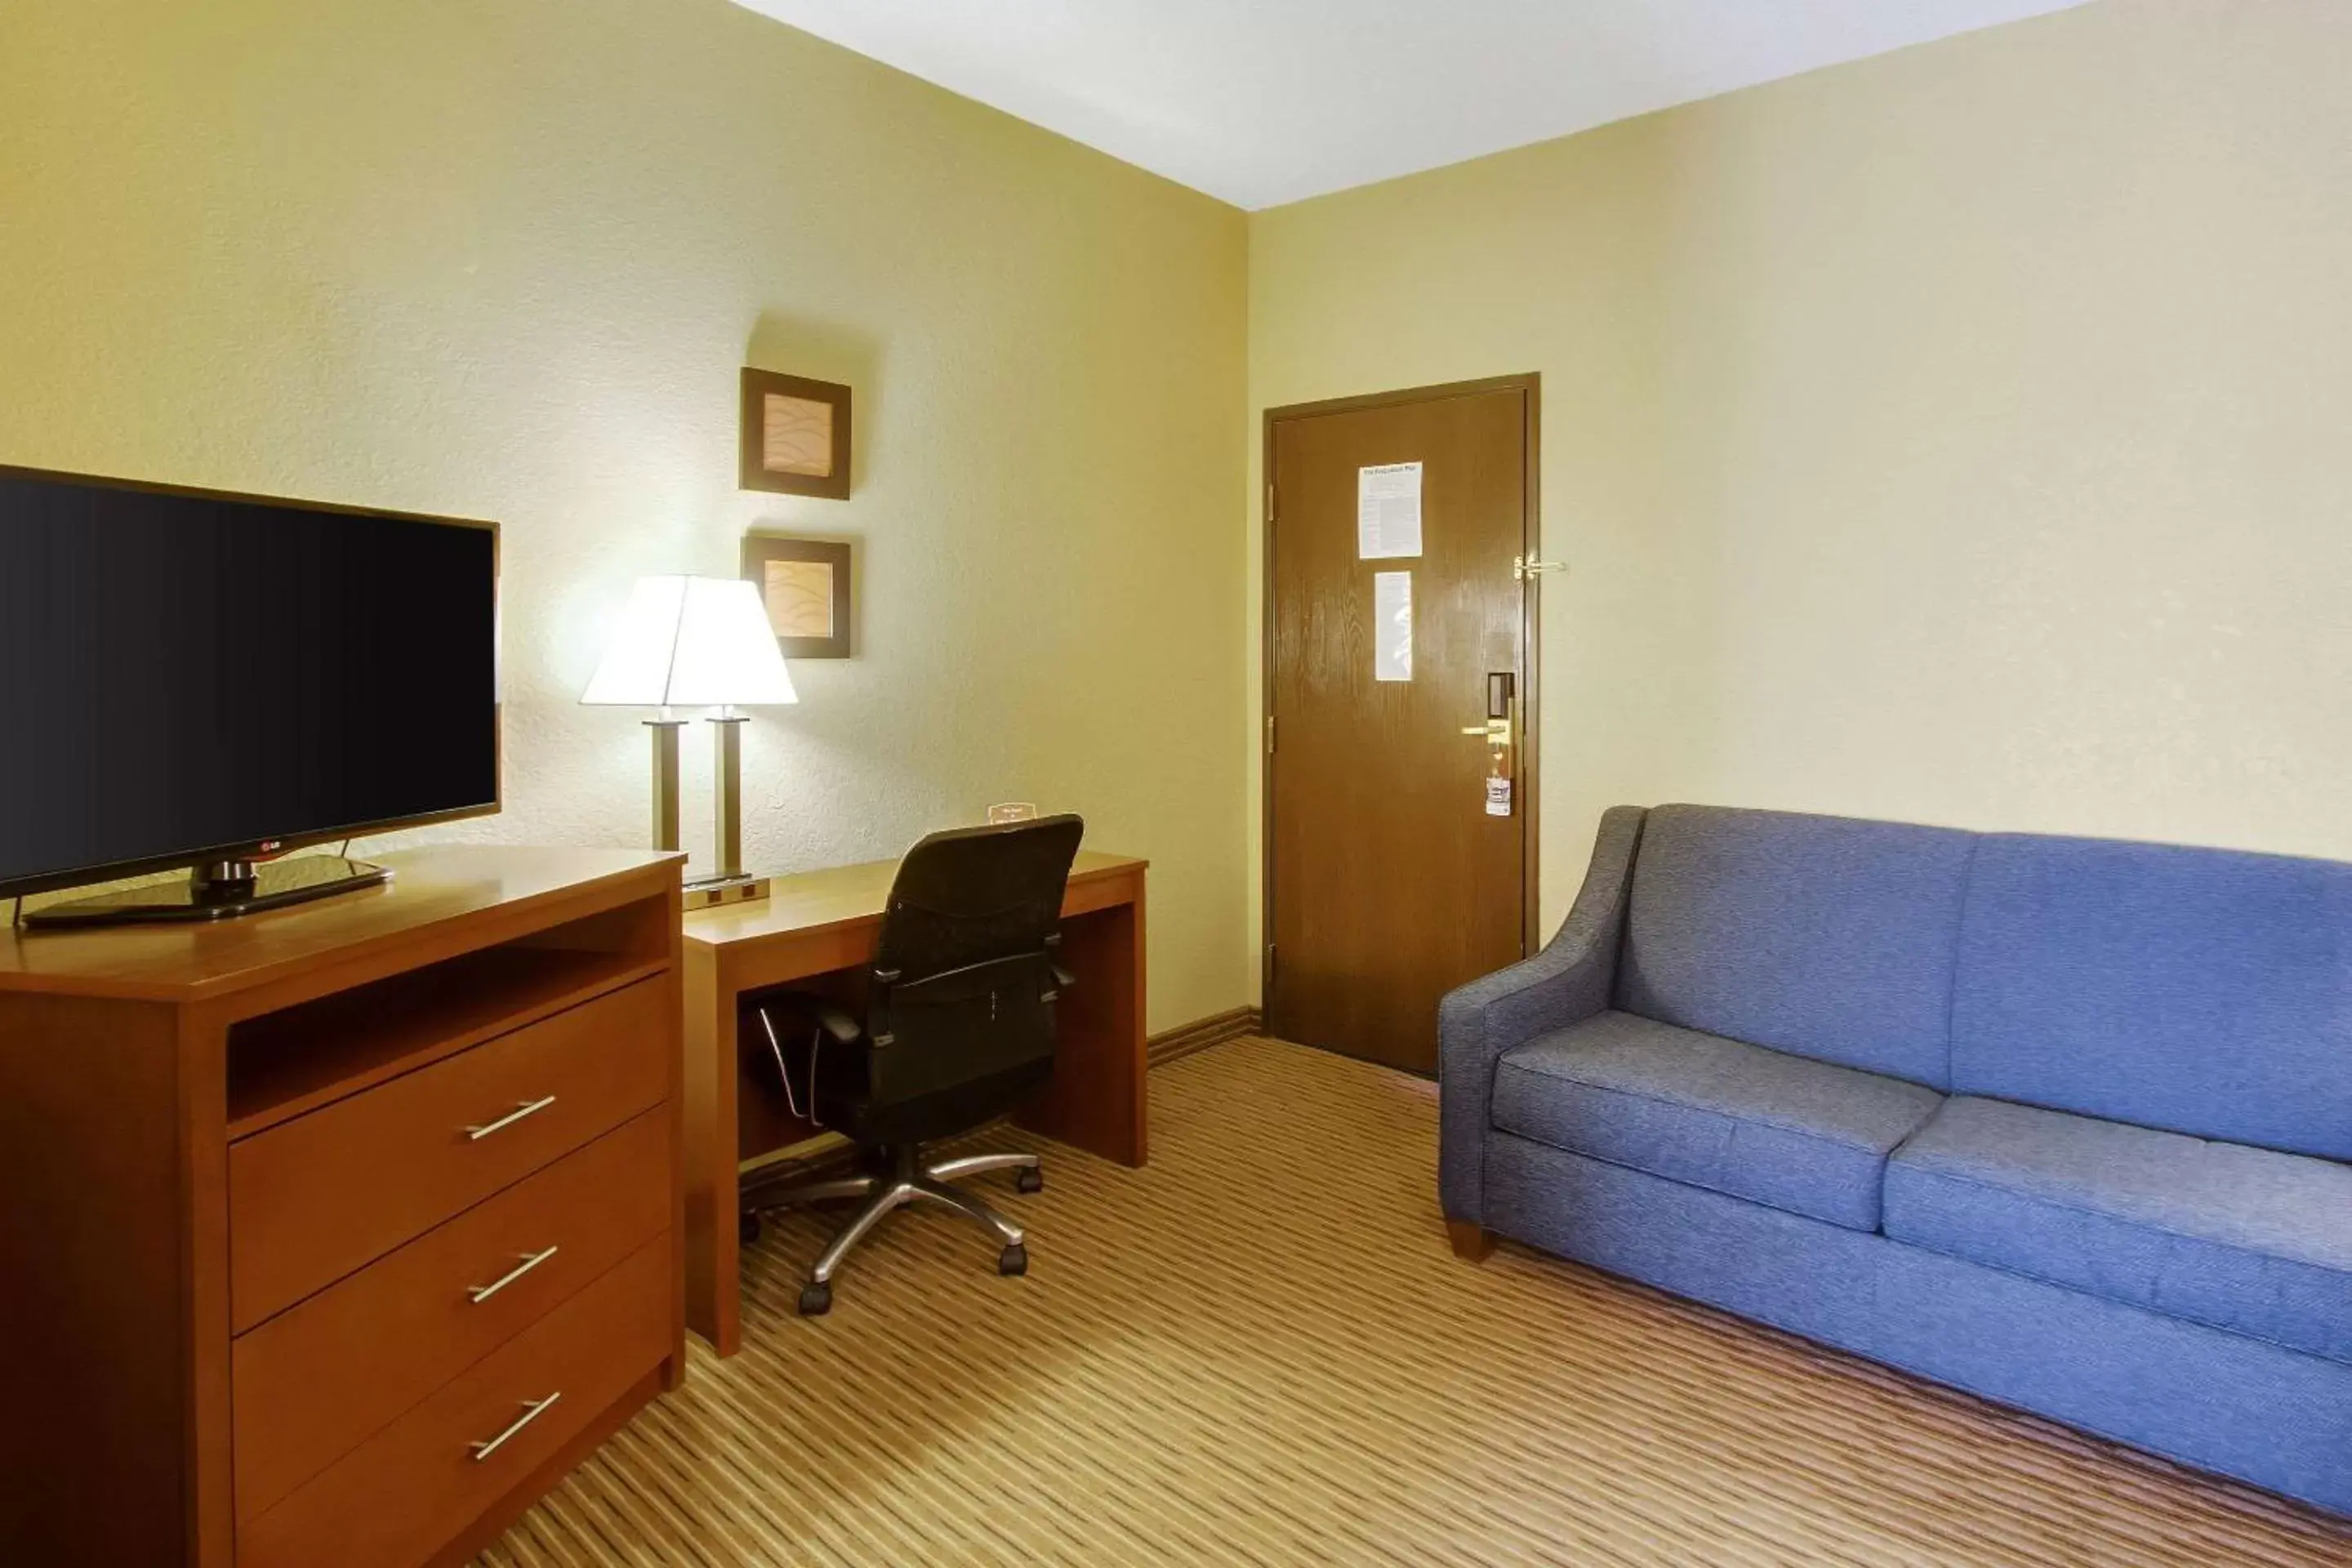 Bedroom, TV/Entertainment Center in Comfort Inn & Suites Bellevue - Omaha Offutt AFB